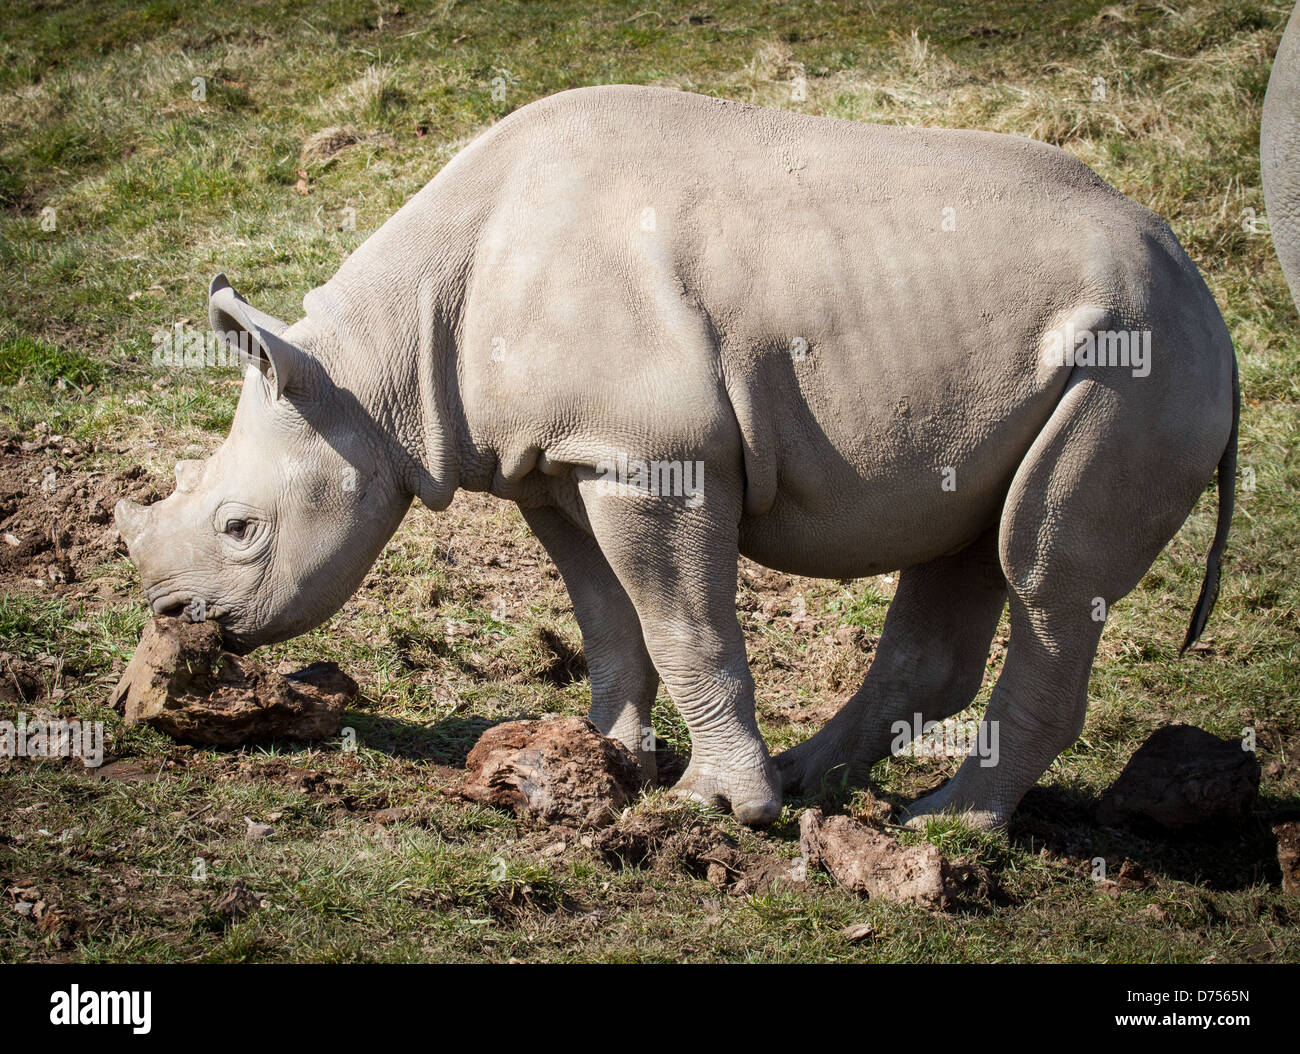 baby black rhino at chester zoo Stock Photo